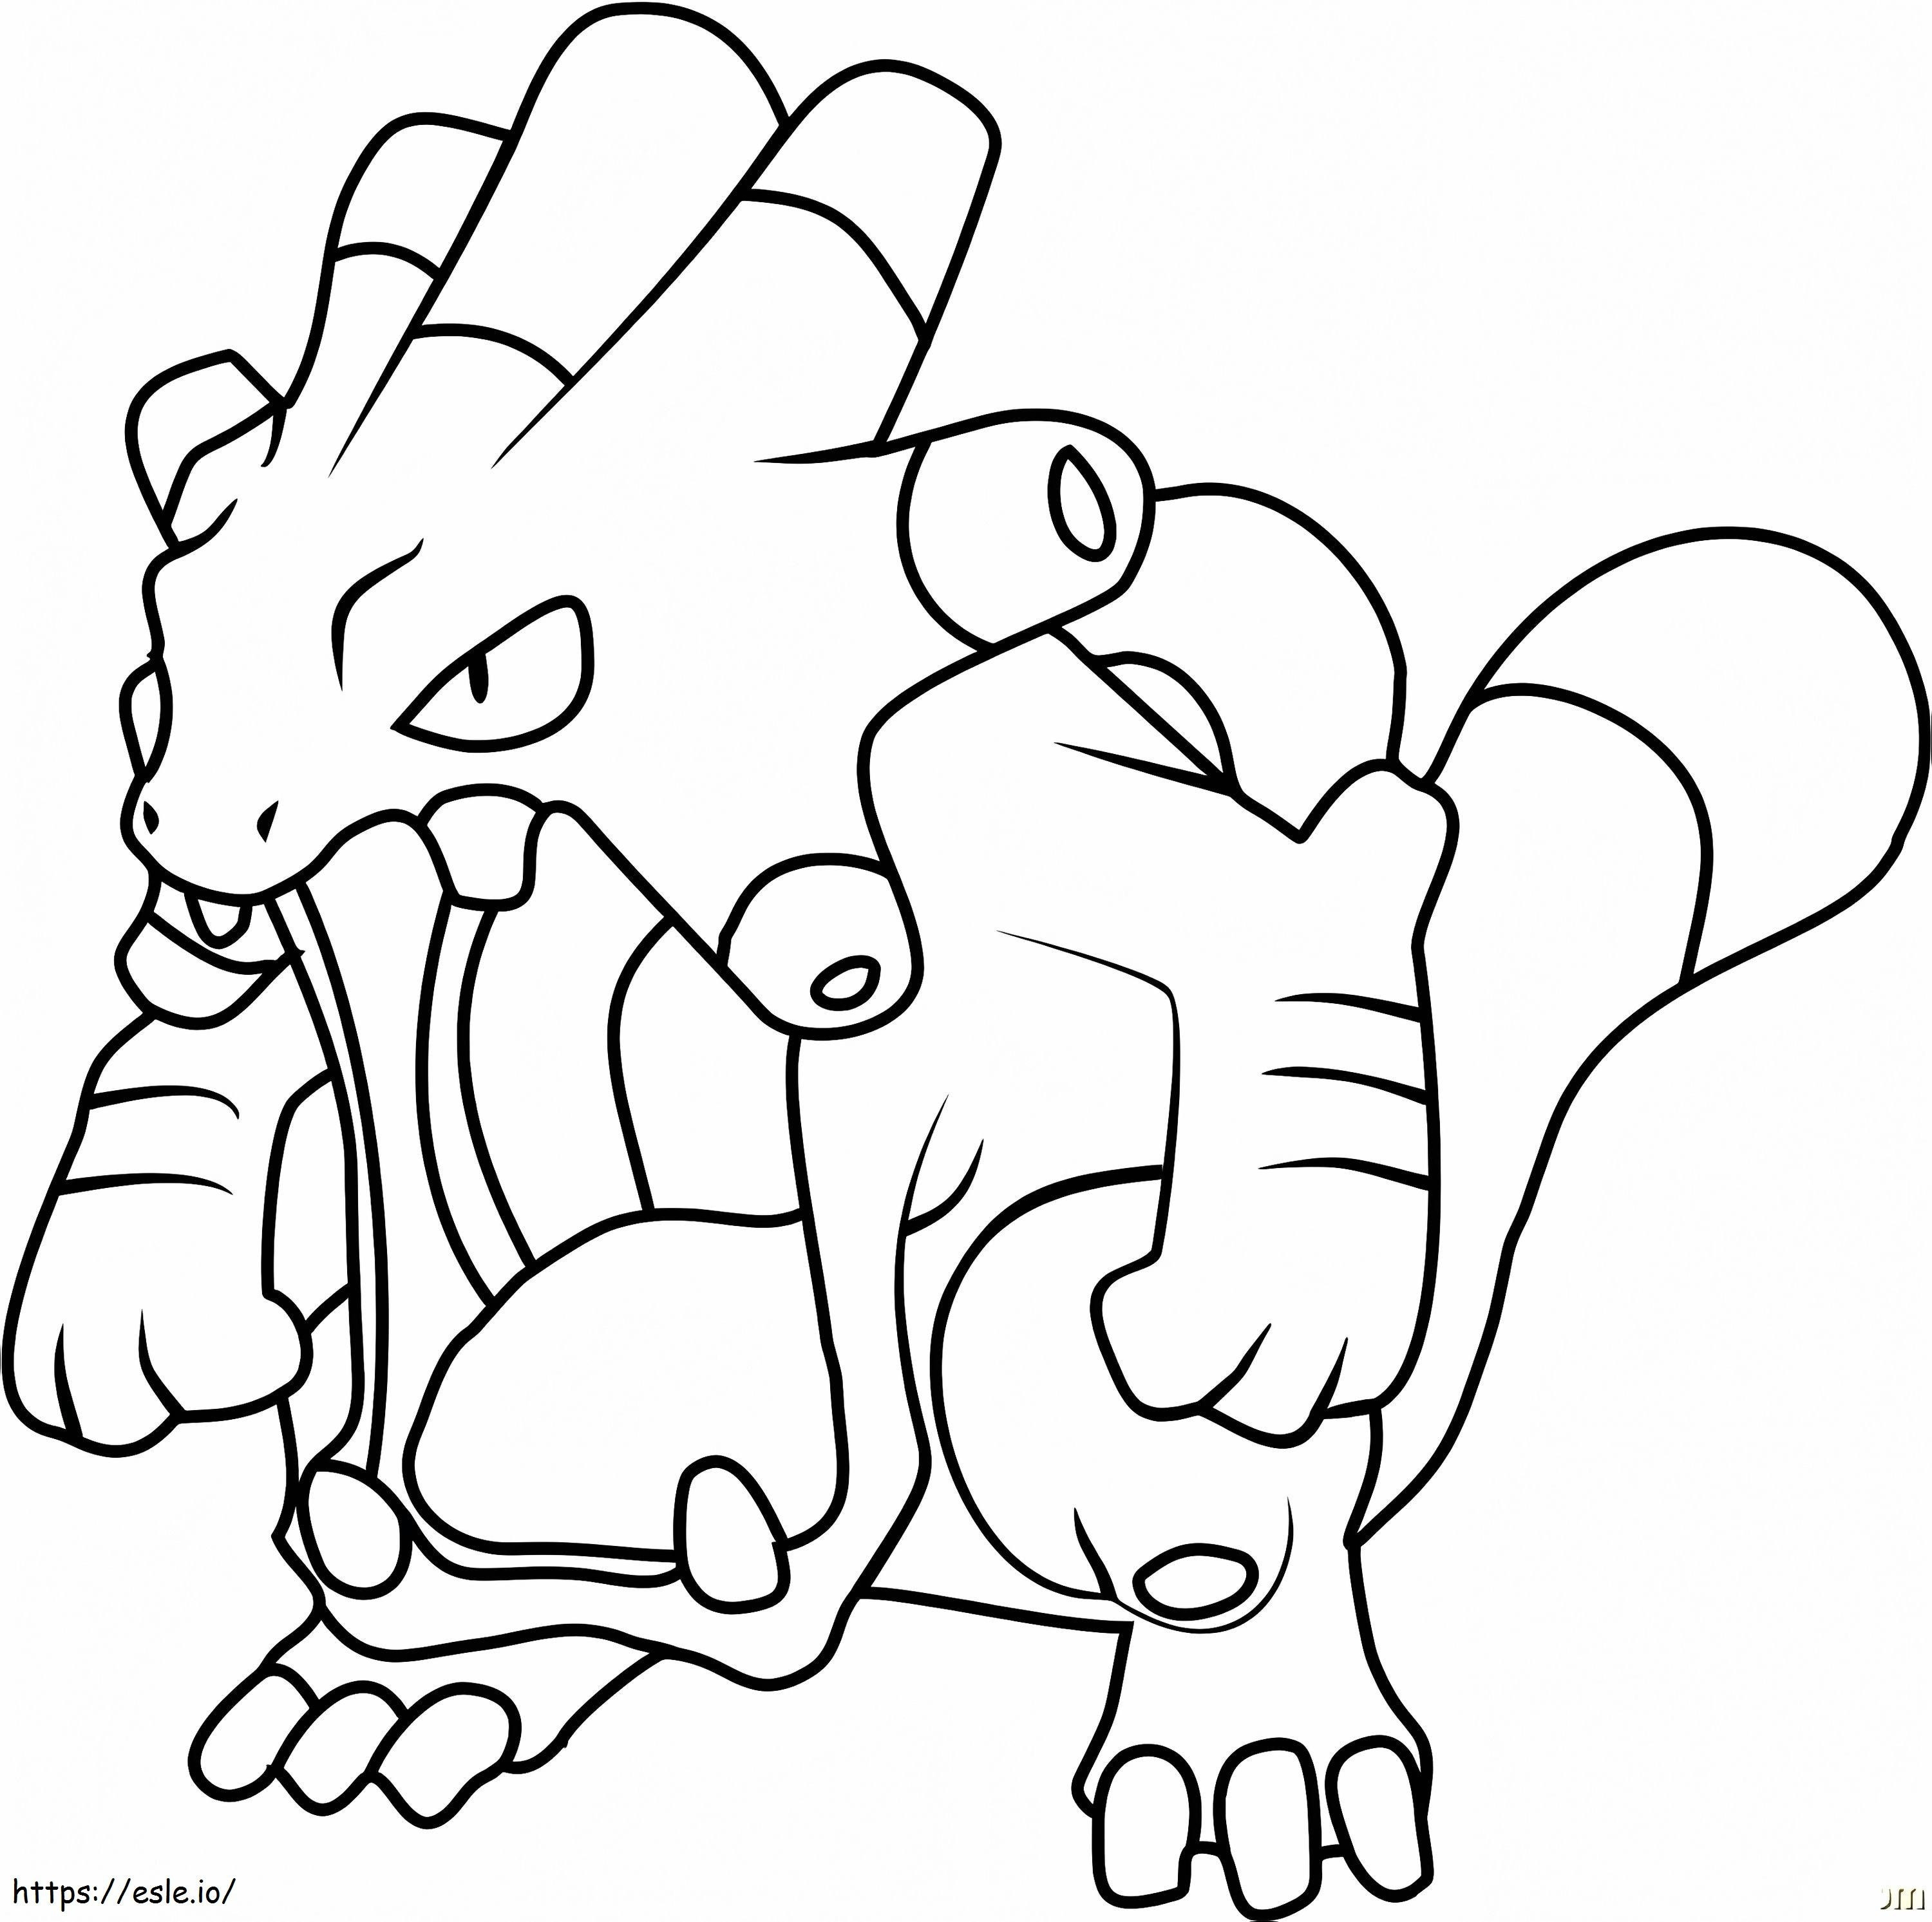 Coloriage Pokémon Exploud Gen 3 à imprimer dessin